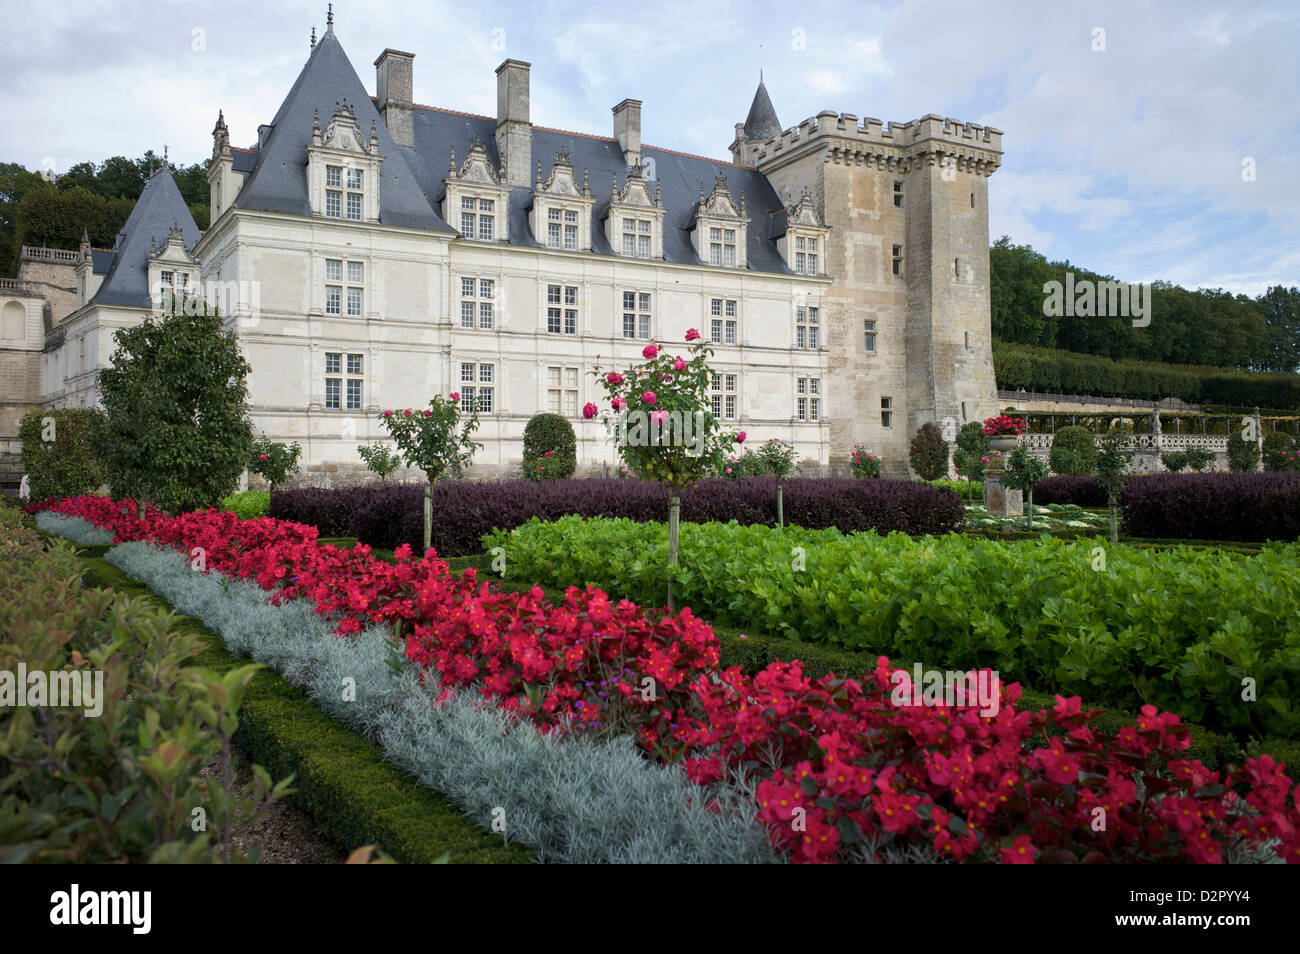 Chateau de Villandry, UNESCO World Heritage Site, Indre-et-Loire, Loire Valley, France, Europe Stock Photo